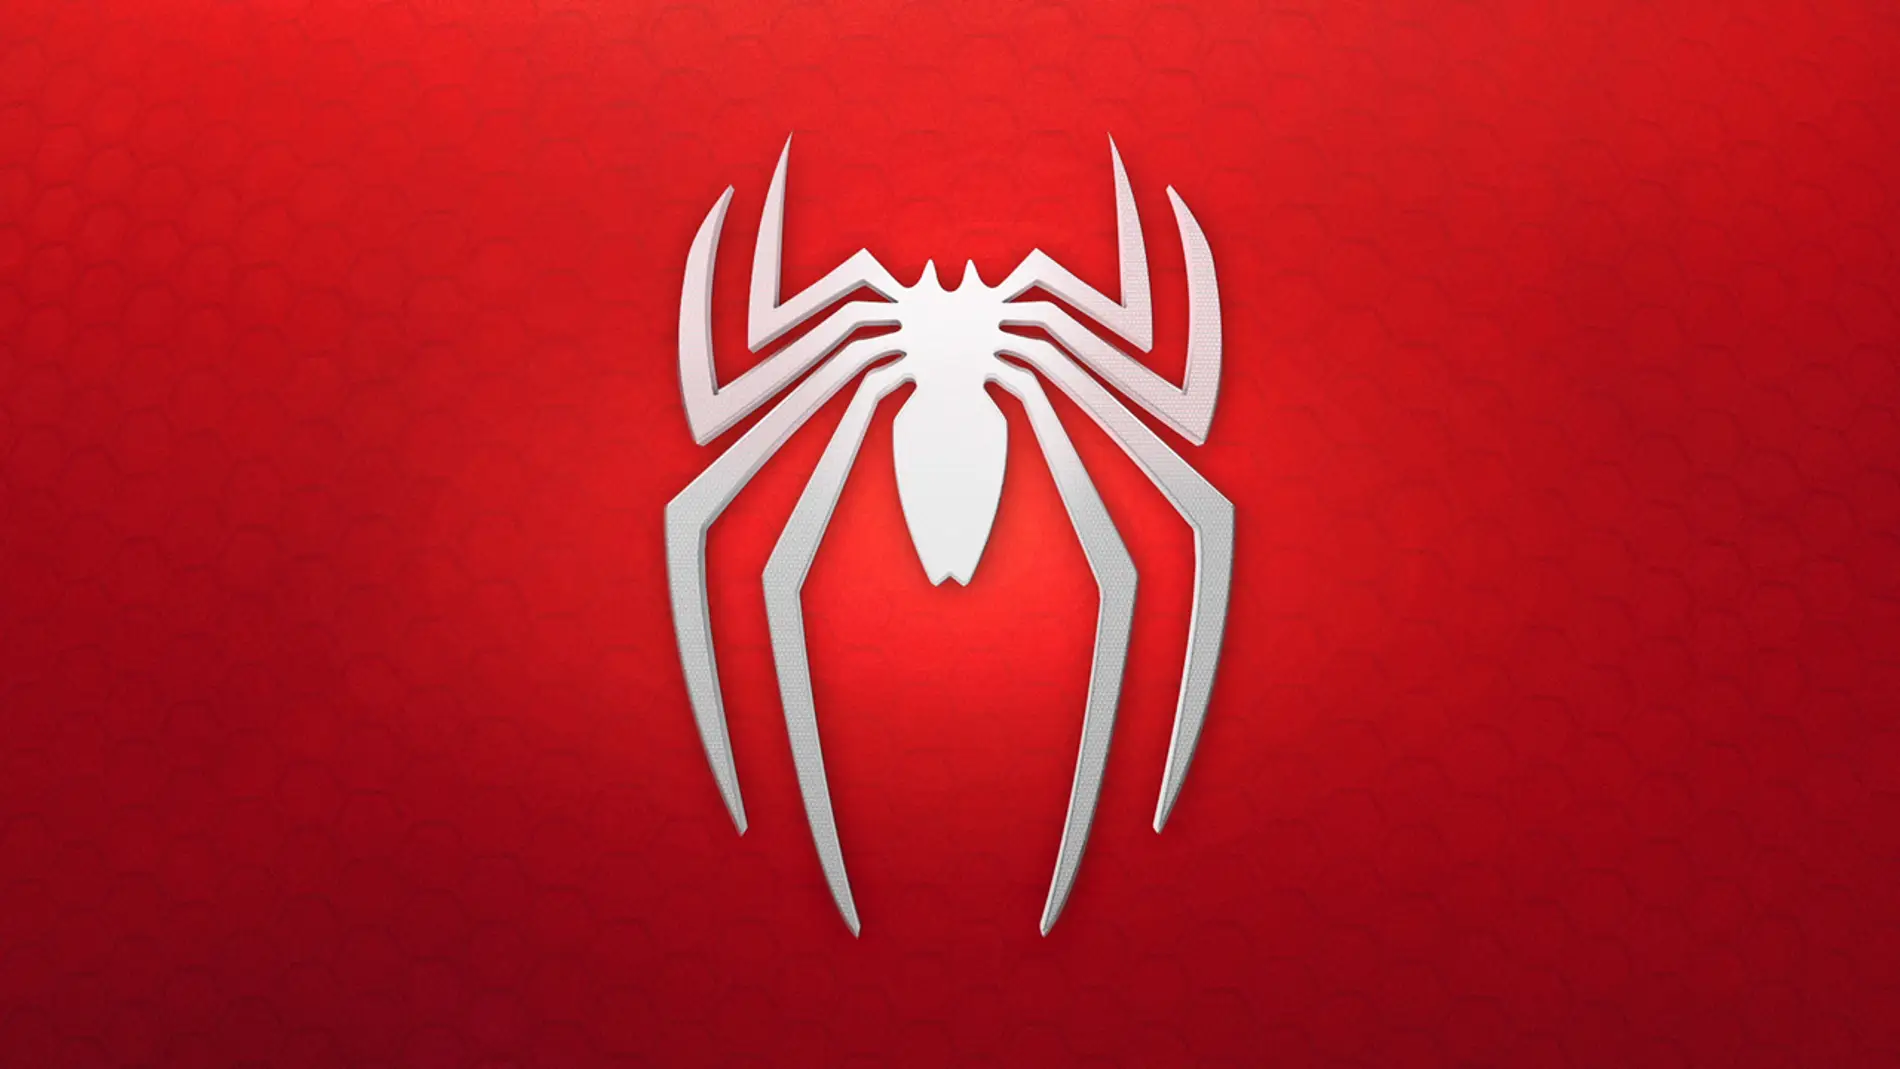 El logotipo Spider-man para PlayStation 4 